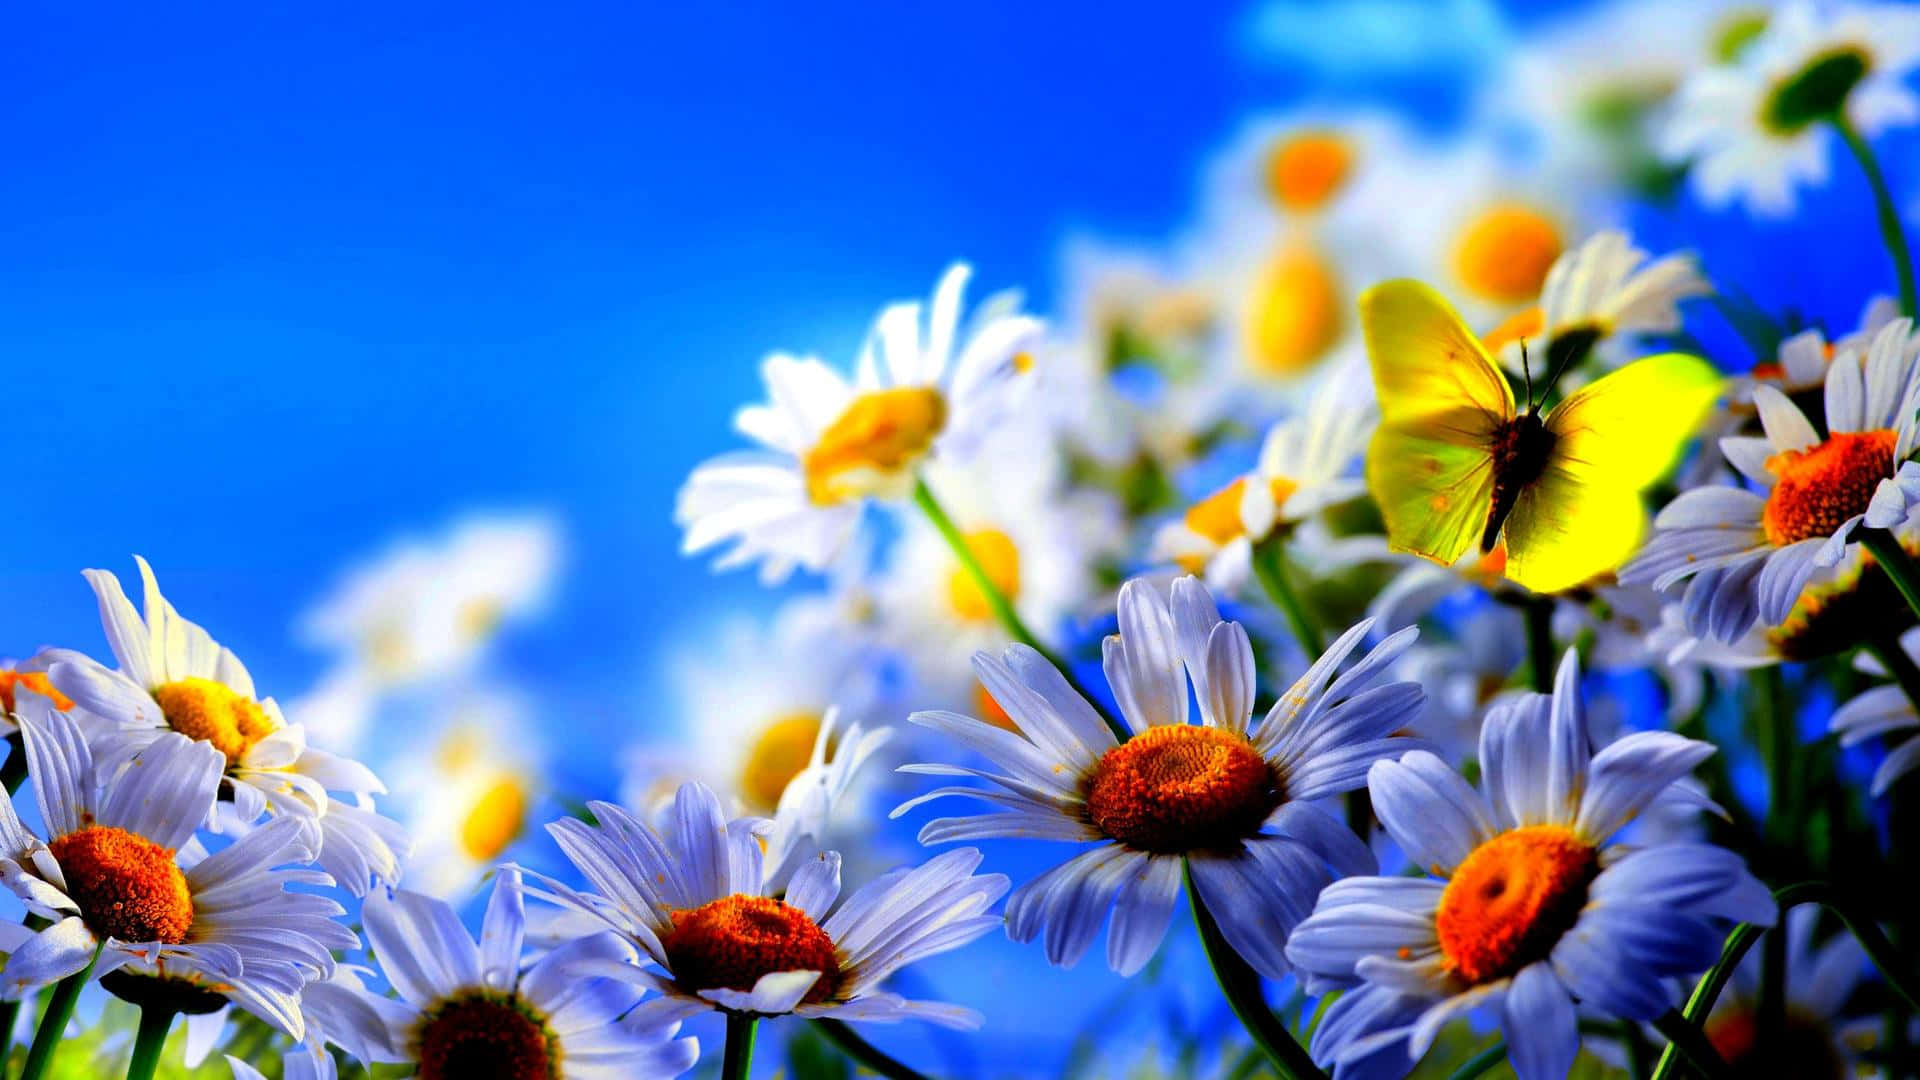 Unaflor Vibrante Y Colorida En Plena Floración. Fondo de pantalla